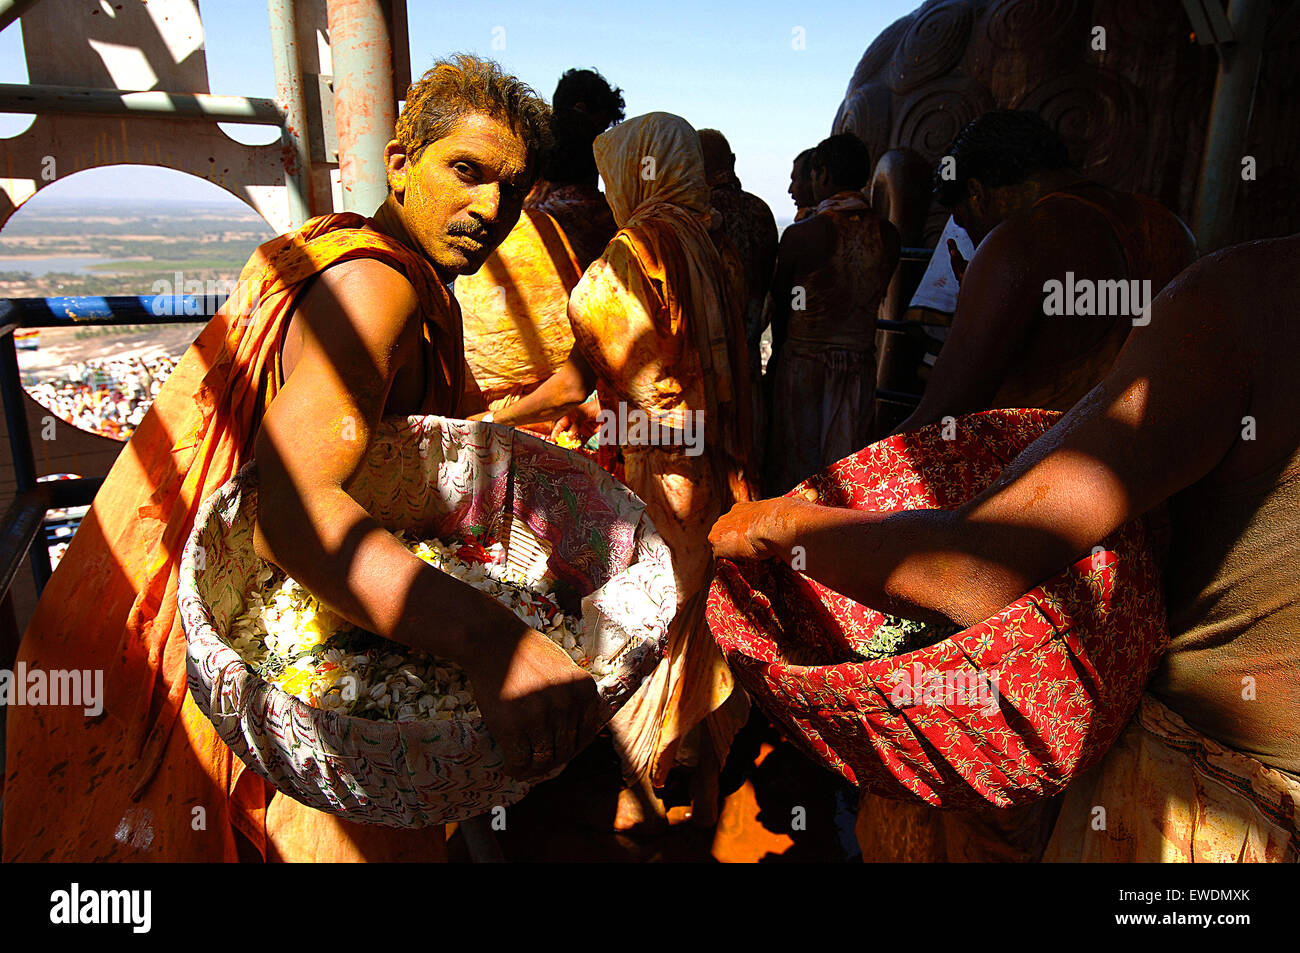 Indien Karnataka Sravanabelagola Pilger getränkt in Heilige Flüssigkeiten verwendet, um Salbe die Statue von Lord Bahubali tragen Körbe von Blütenblättern, die Statue zu verzieren Stockfoto